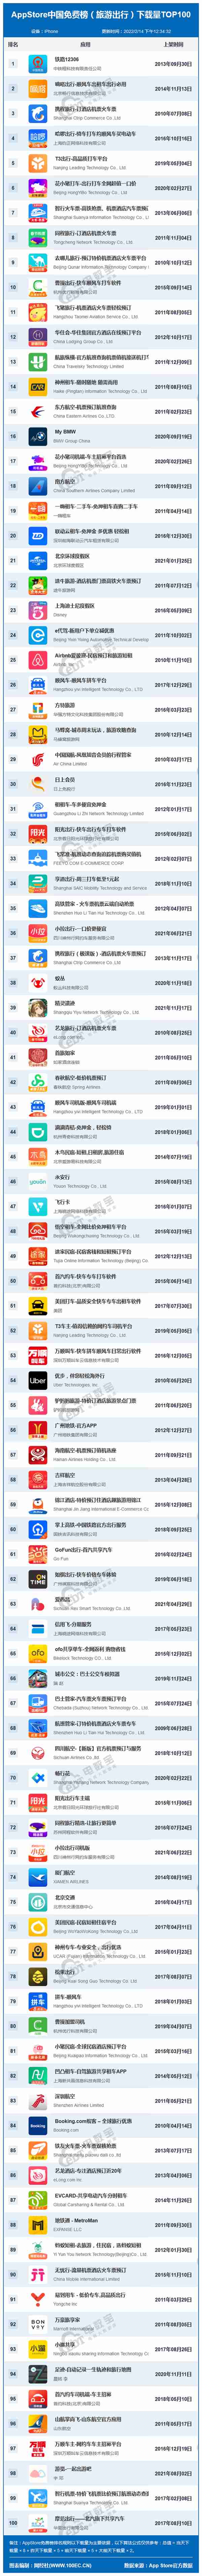 2月AppStore中国免费榜(旅游出行)TOP100 :嘀嗒出行 携程旅行前三